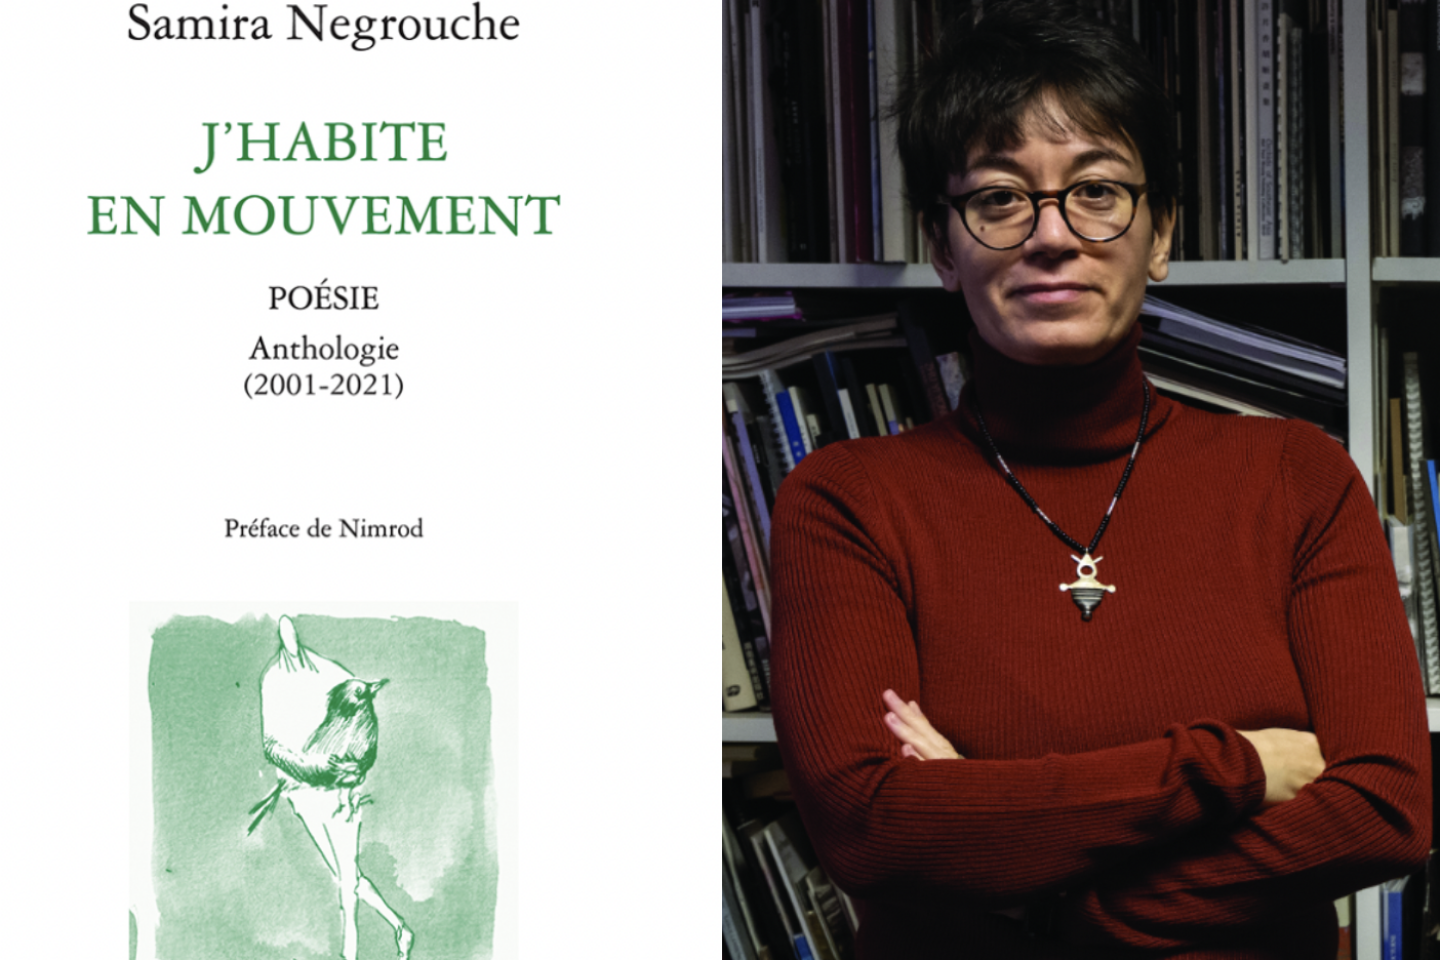 « J’habite en mouvement » et « Stations », de Samira Negrouche : la trajectoire exigeante d’une voix majeure de la poésie algérienne